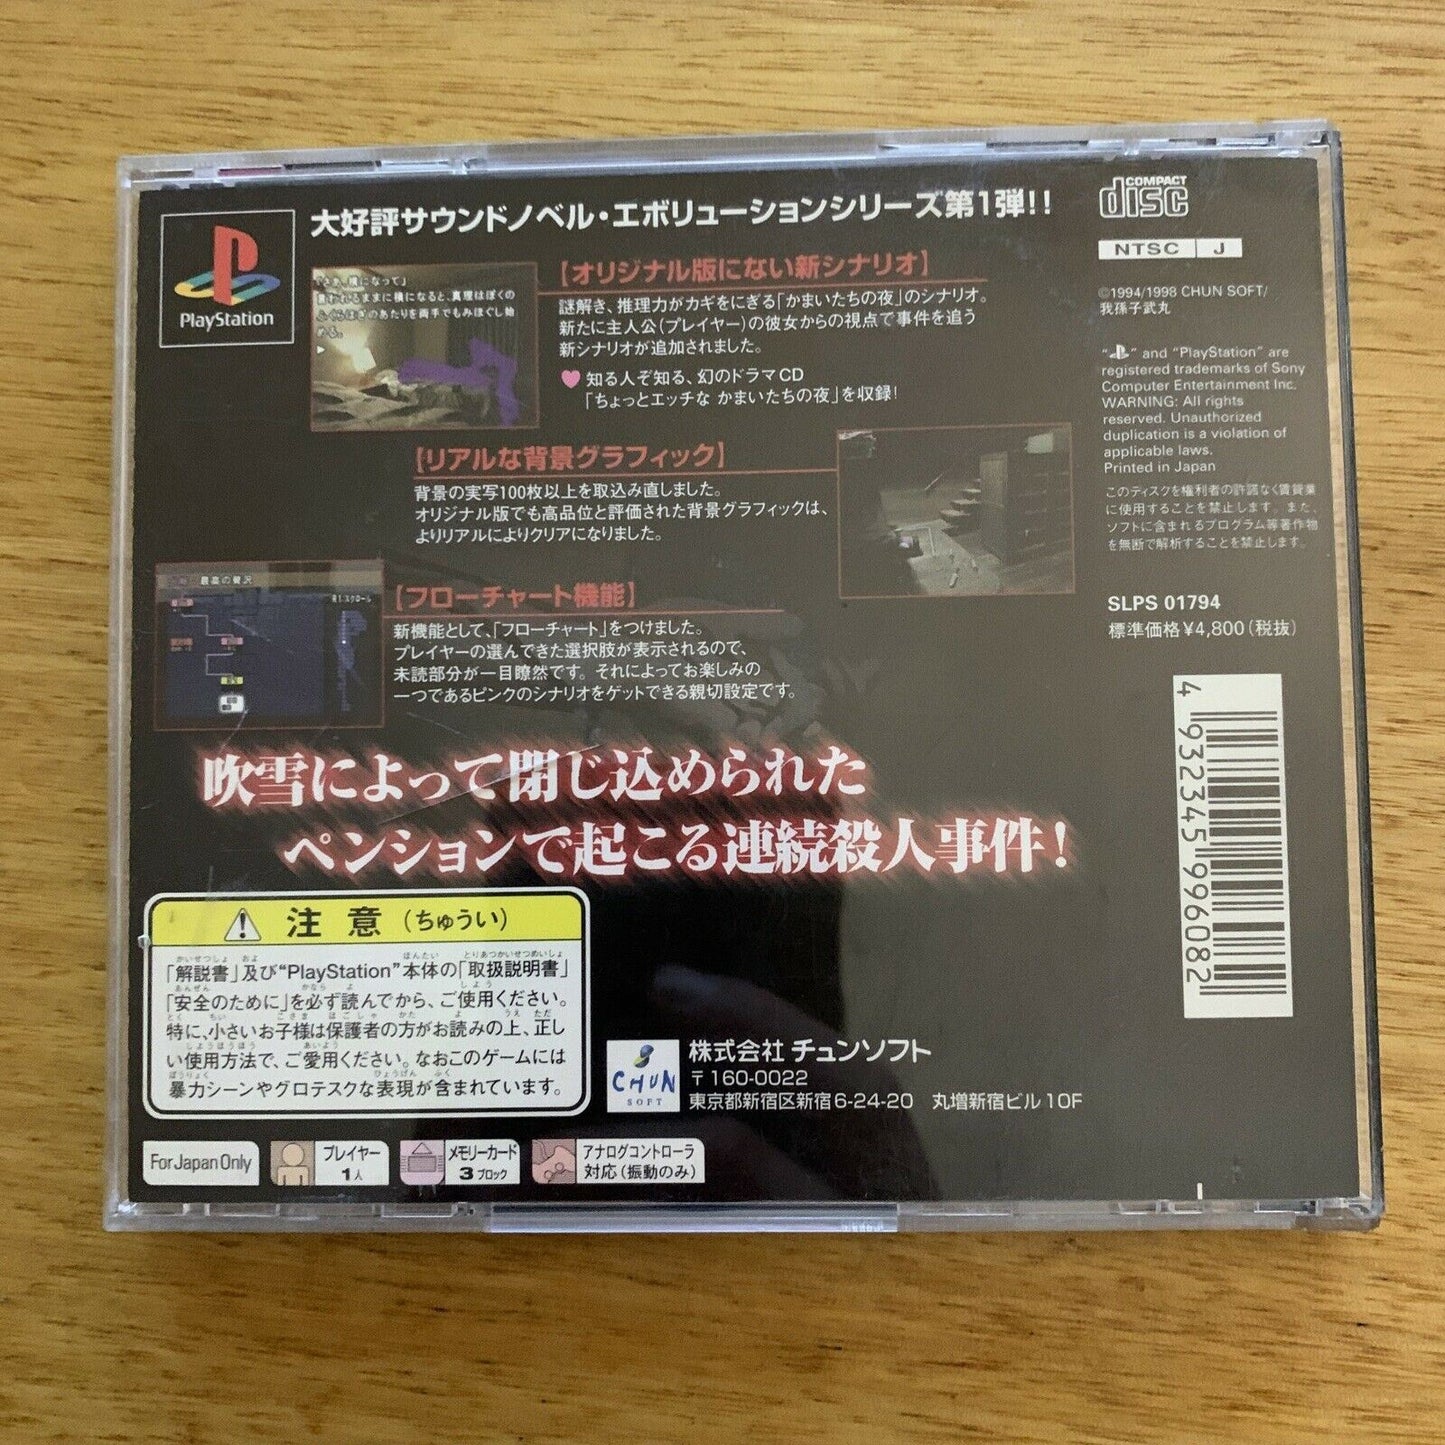 Kamaitachi no Yoru Tokubetsu-hen - Playstation PS1 NTSC-J Japan 1998 Game